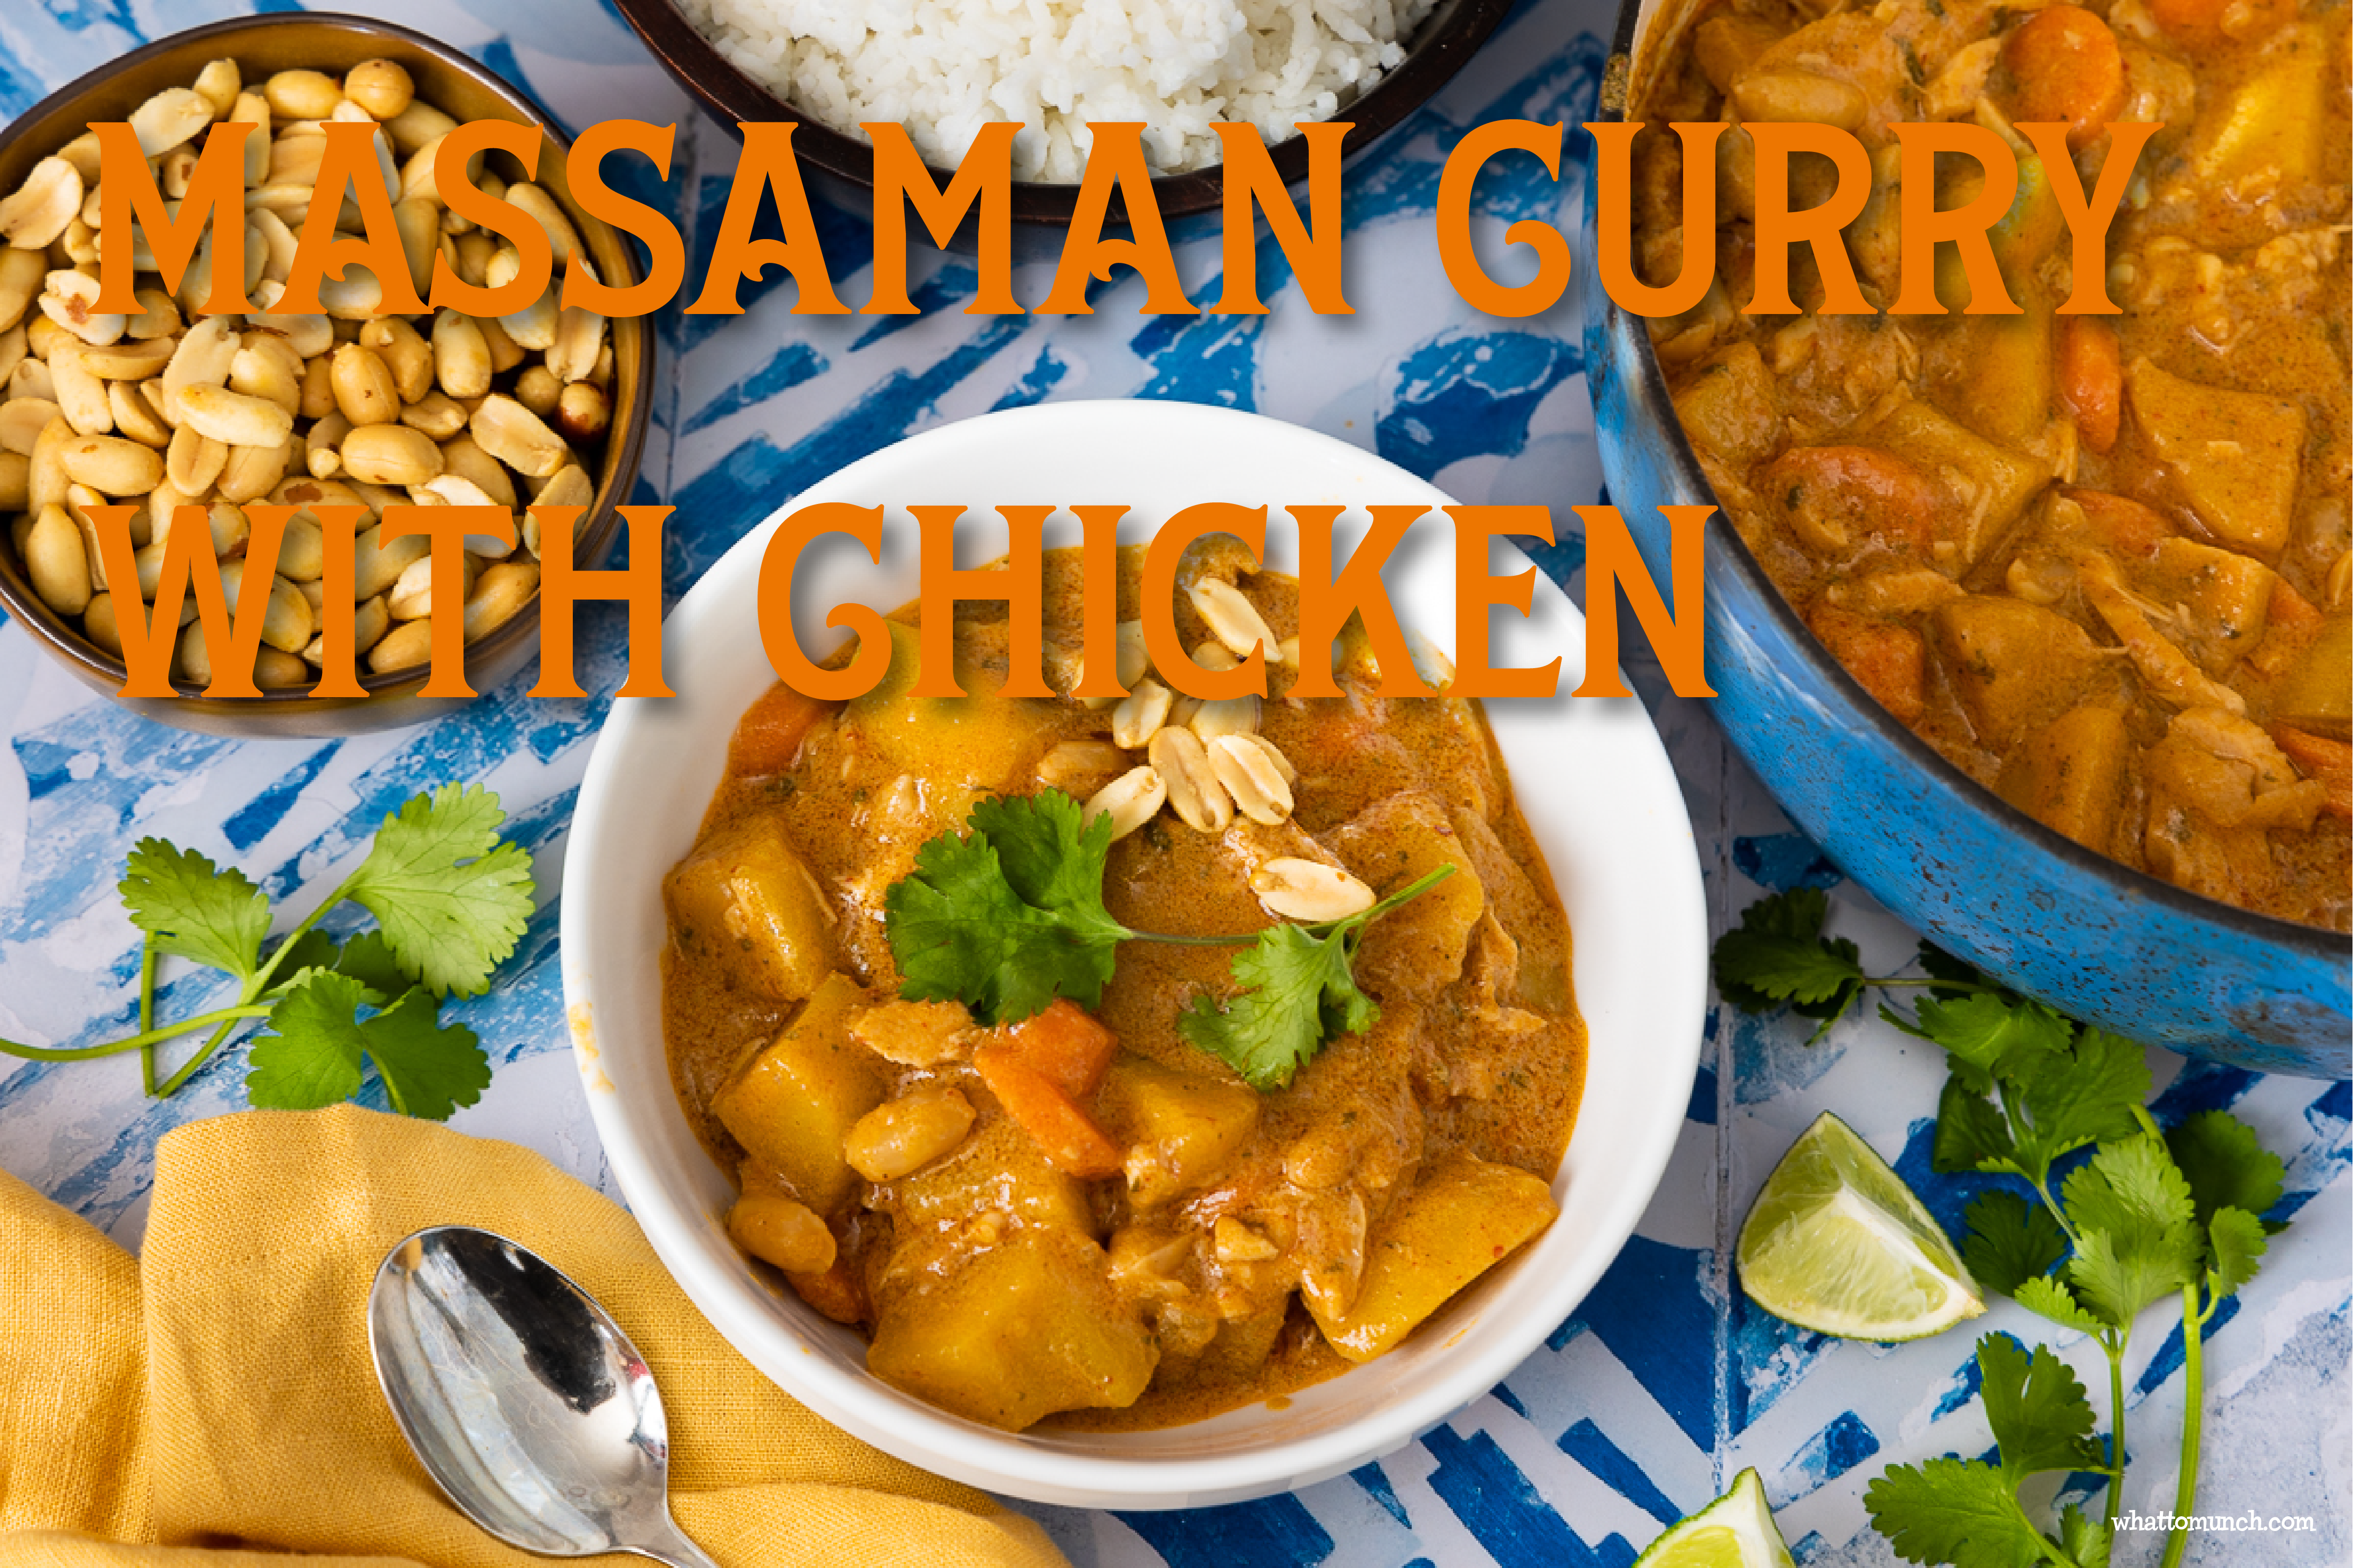 Massaman Curry with chicken